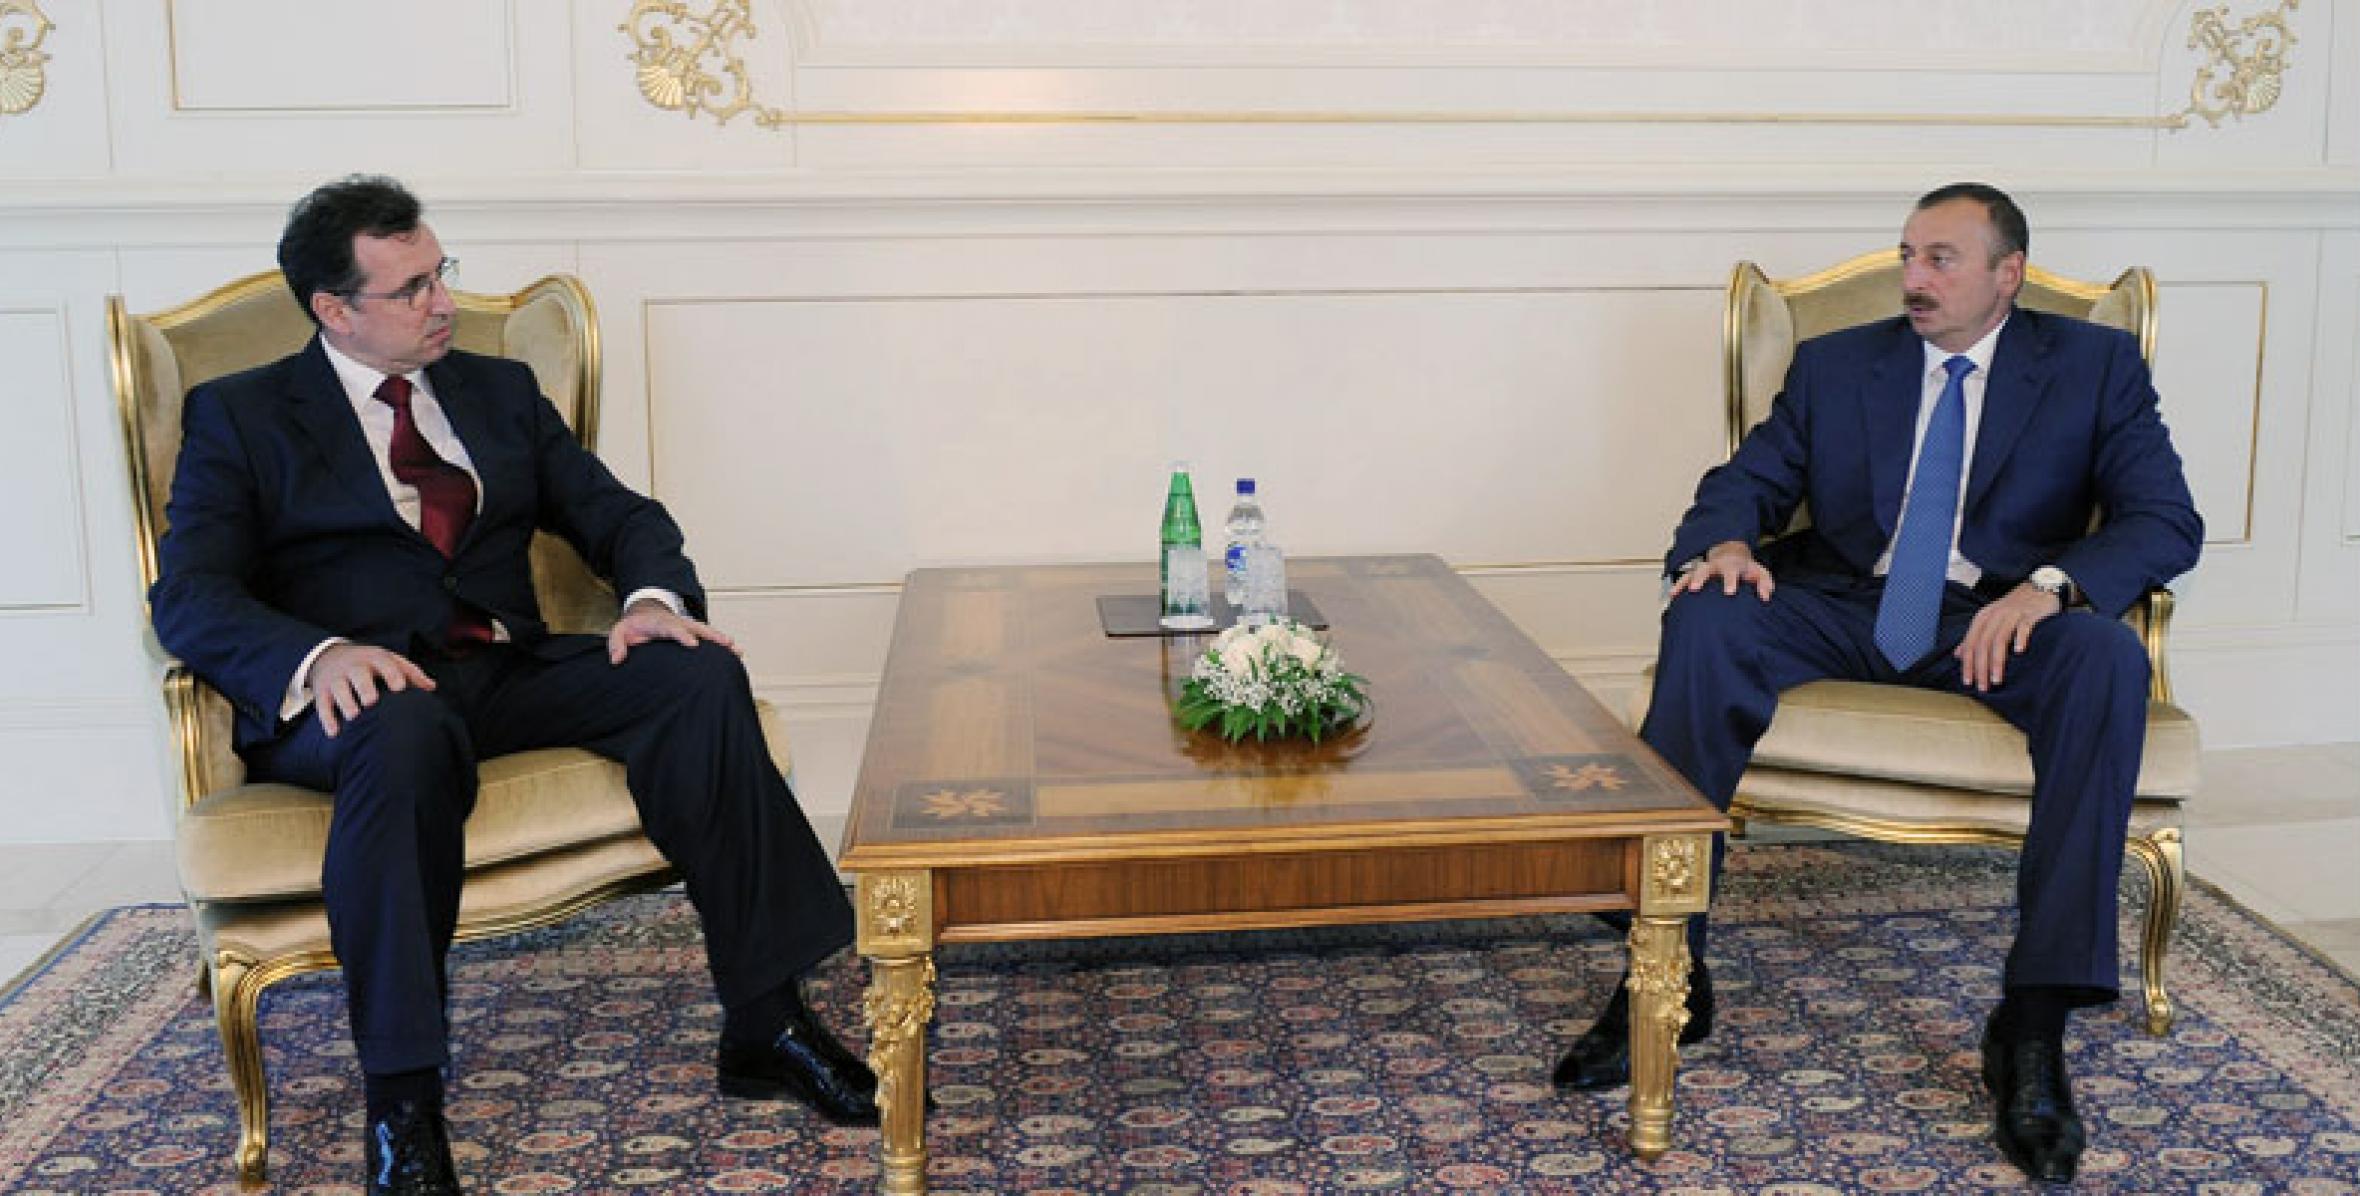 Ильхам Алиев принял верительные грамоты новоназначенного посла Молдовы в Азербайджане